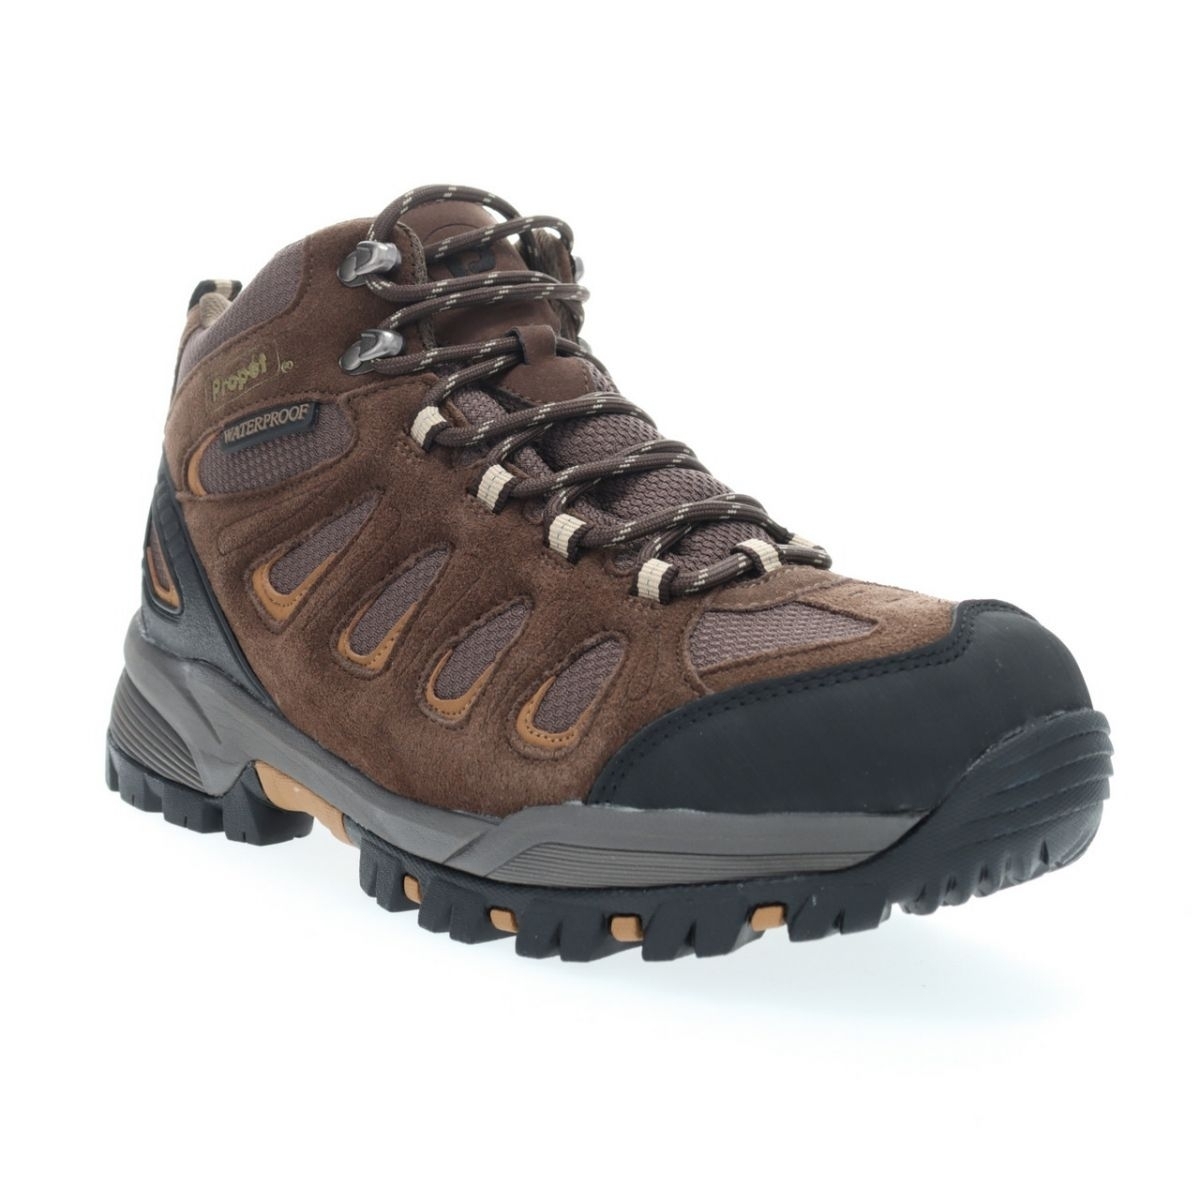 Propet Men's Ridge Walker Hiking Boot Brown - M3599BR 8 XX US Men BROWN - BROWN, 11 X-Wide